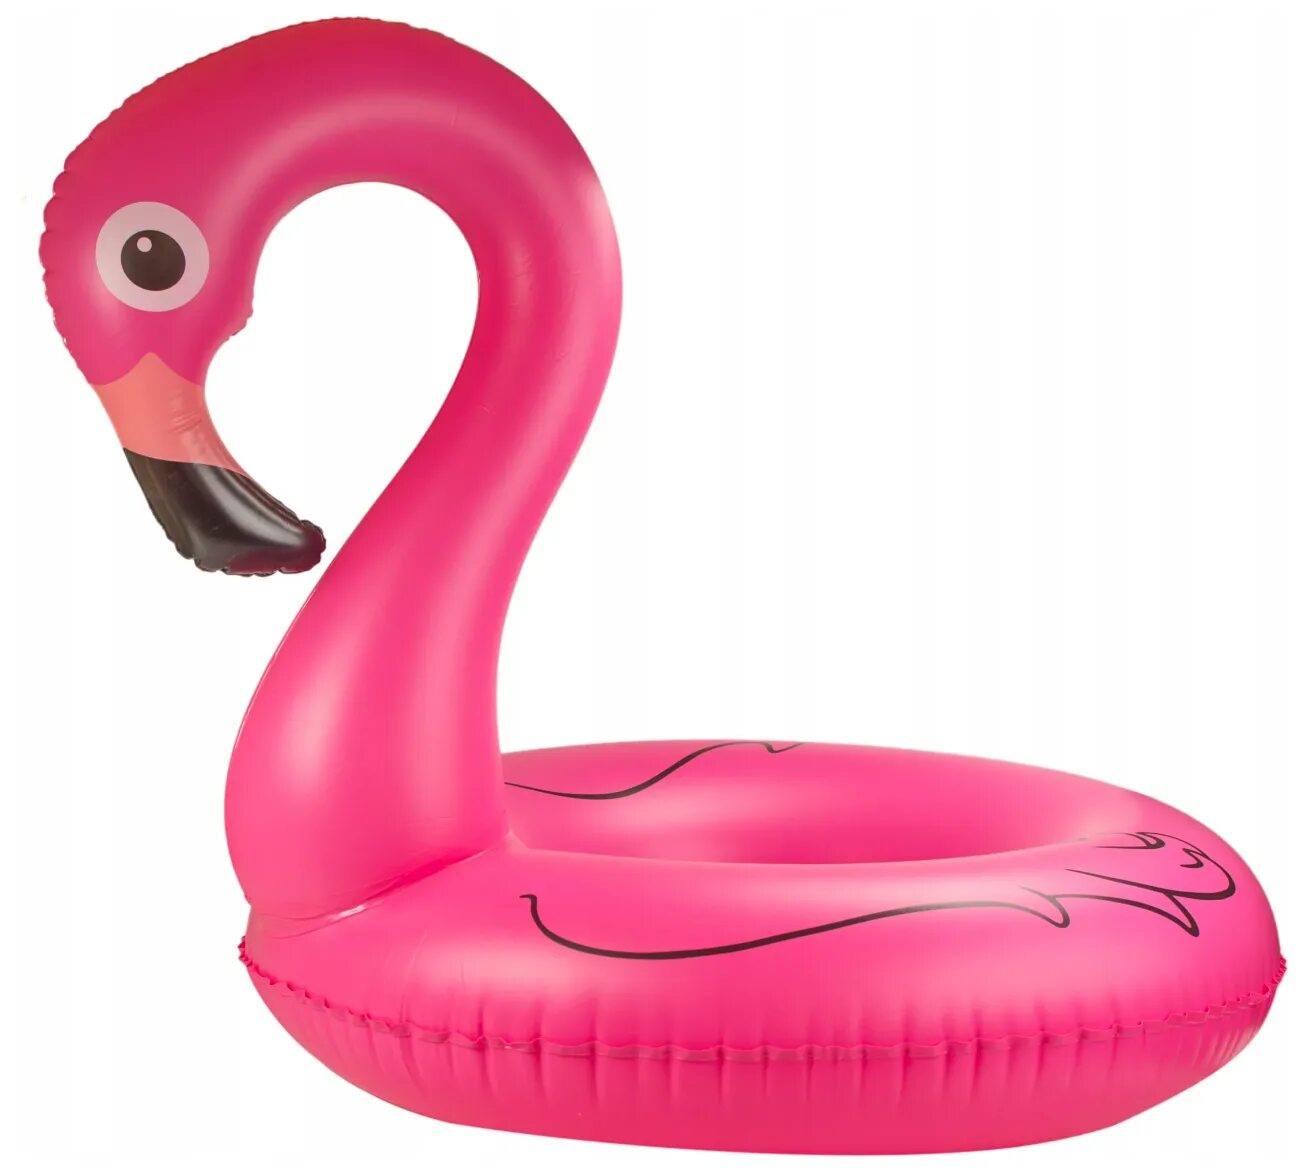 Фламинго для плавания. Круг для плавания Фламинго 90 см. Надувной круг Фламинго. Плавательный круг розовый Фламинго. Круг надувной Фламинго Intex.